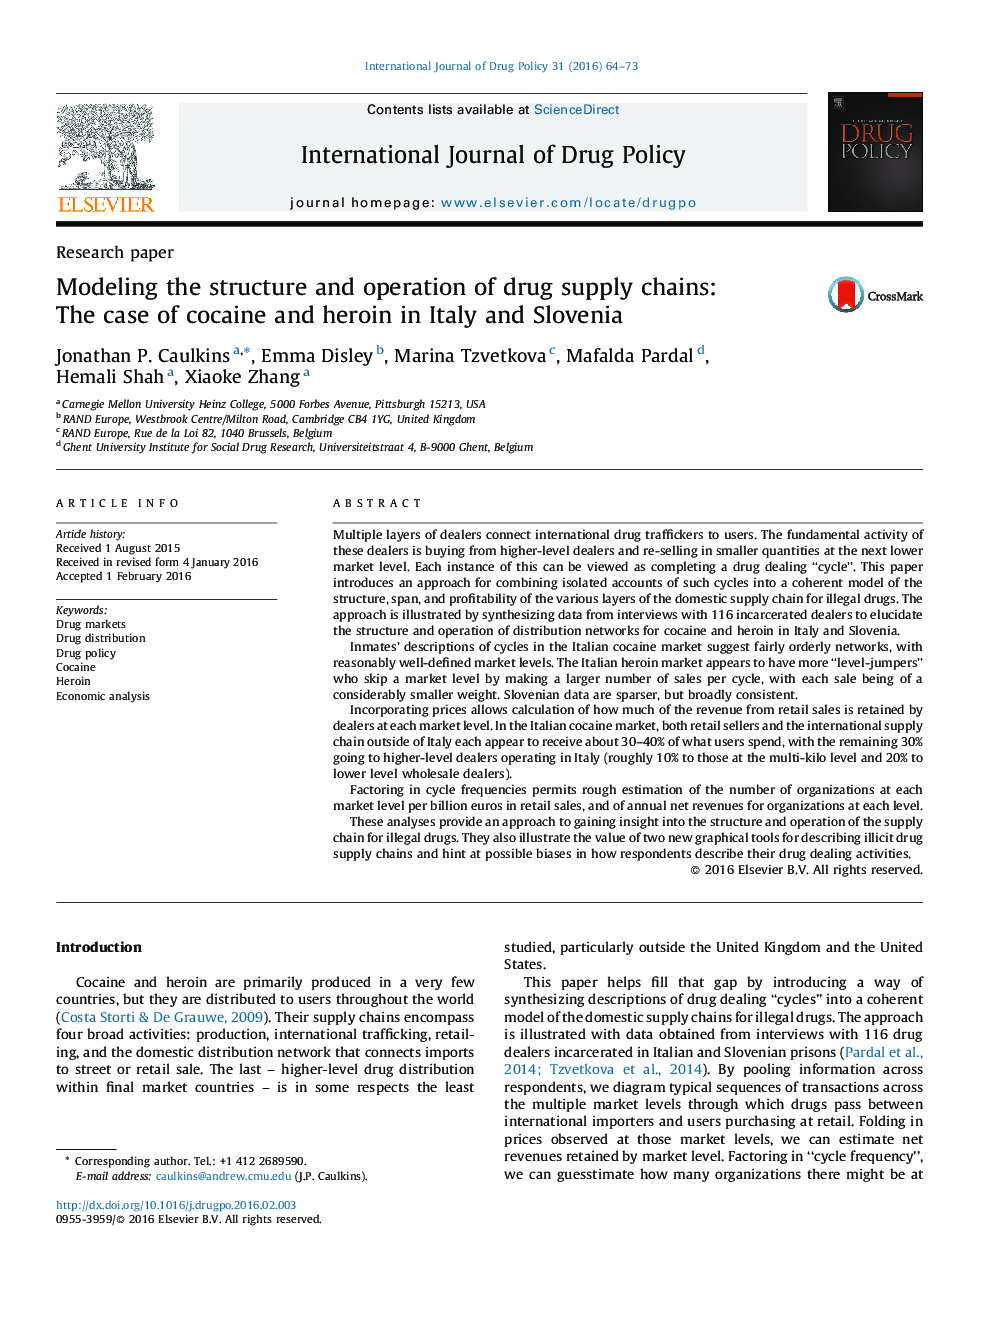 مدل سازی ساختار و عملکرد زنجیره تامین مواد مخدر: مورد کوکائین و هروئین در ایتالیا و اسلوونی